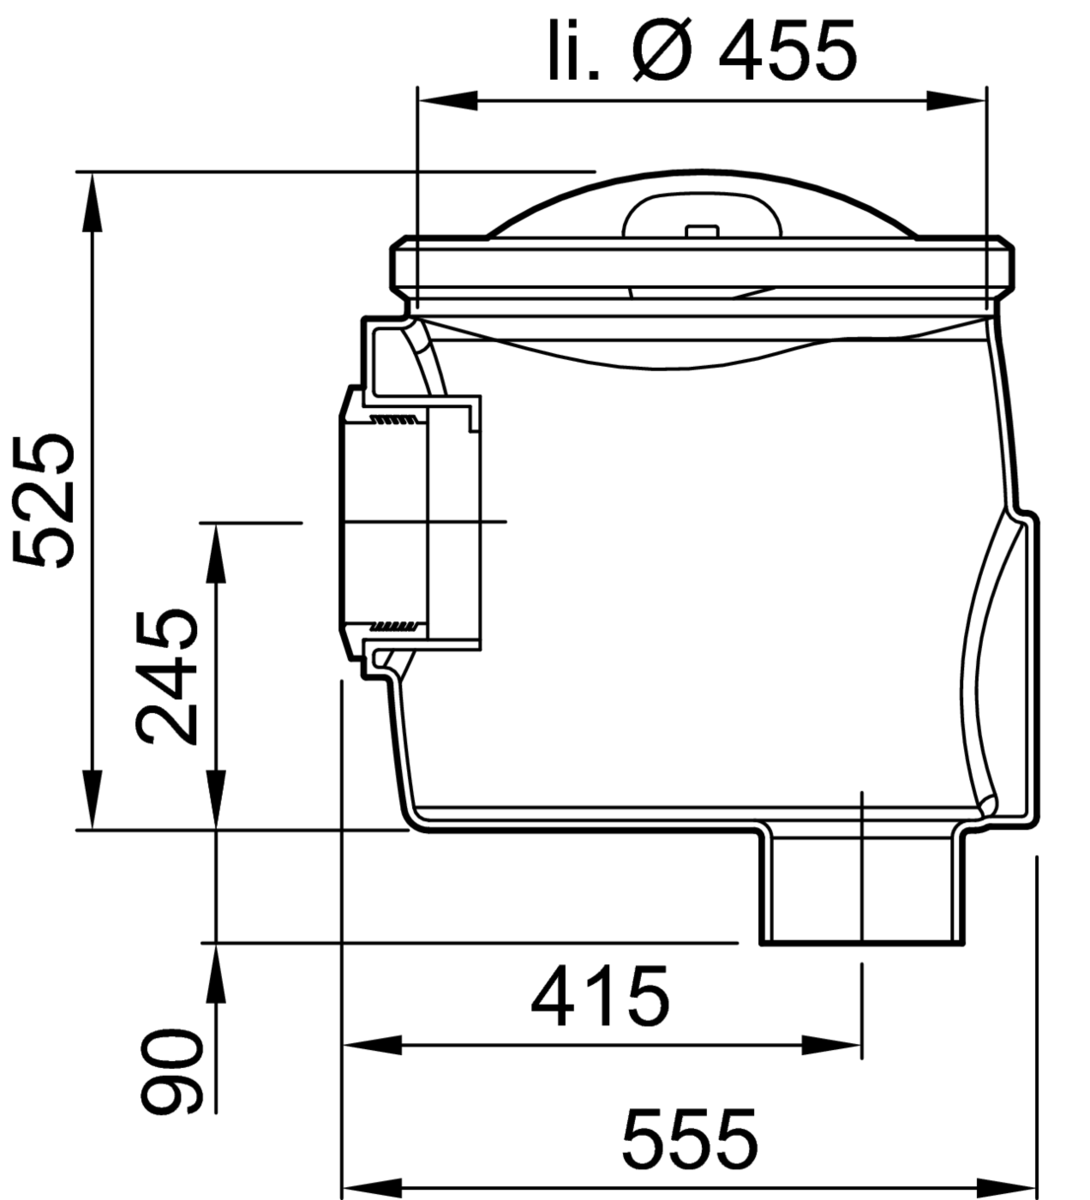 Esquema técnico de la cámara para toma de muestras con conexión DN150 y salida vertical, fabricado en polietileno de alta denisdad (HDPE). De dimensiones Ø455 H525.